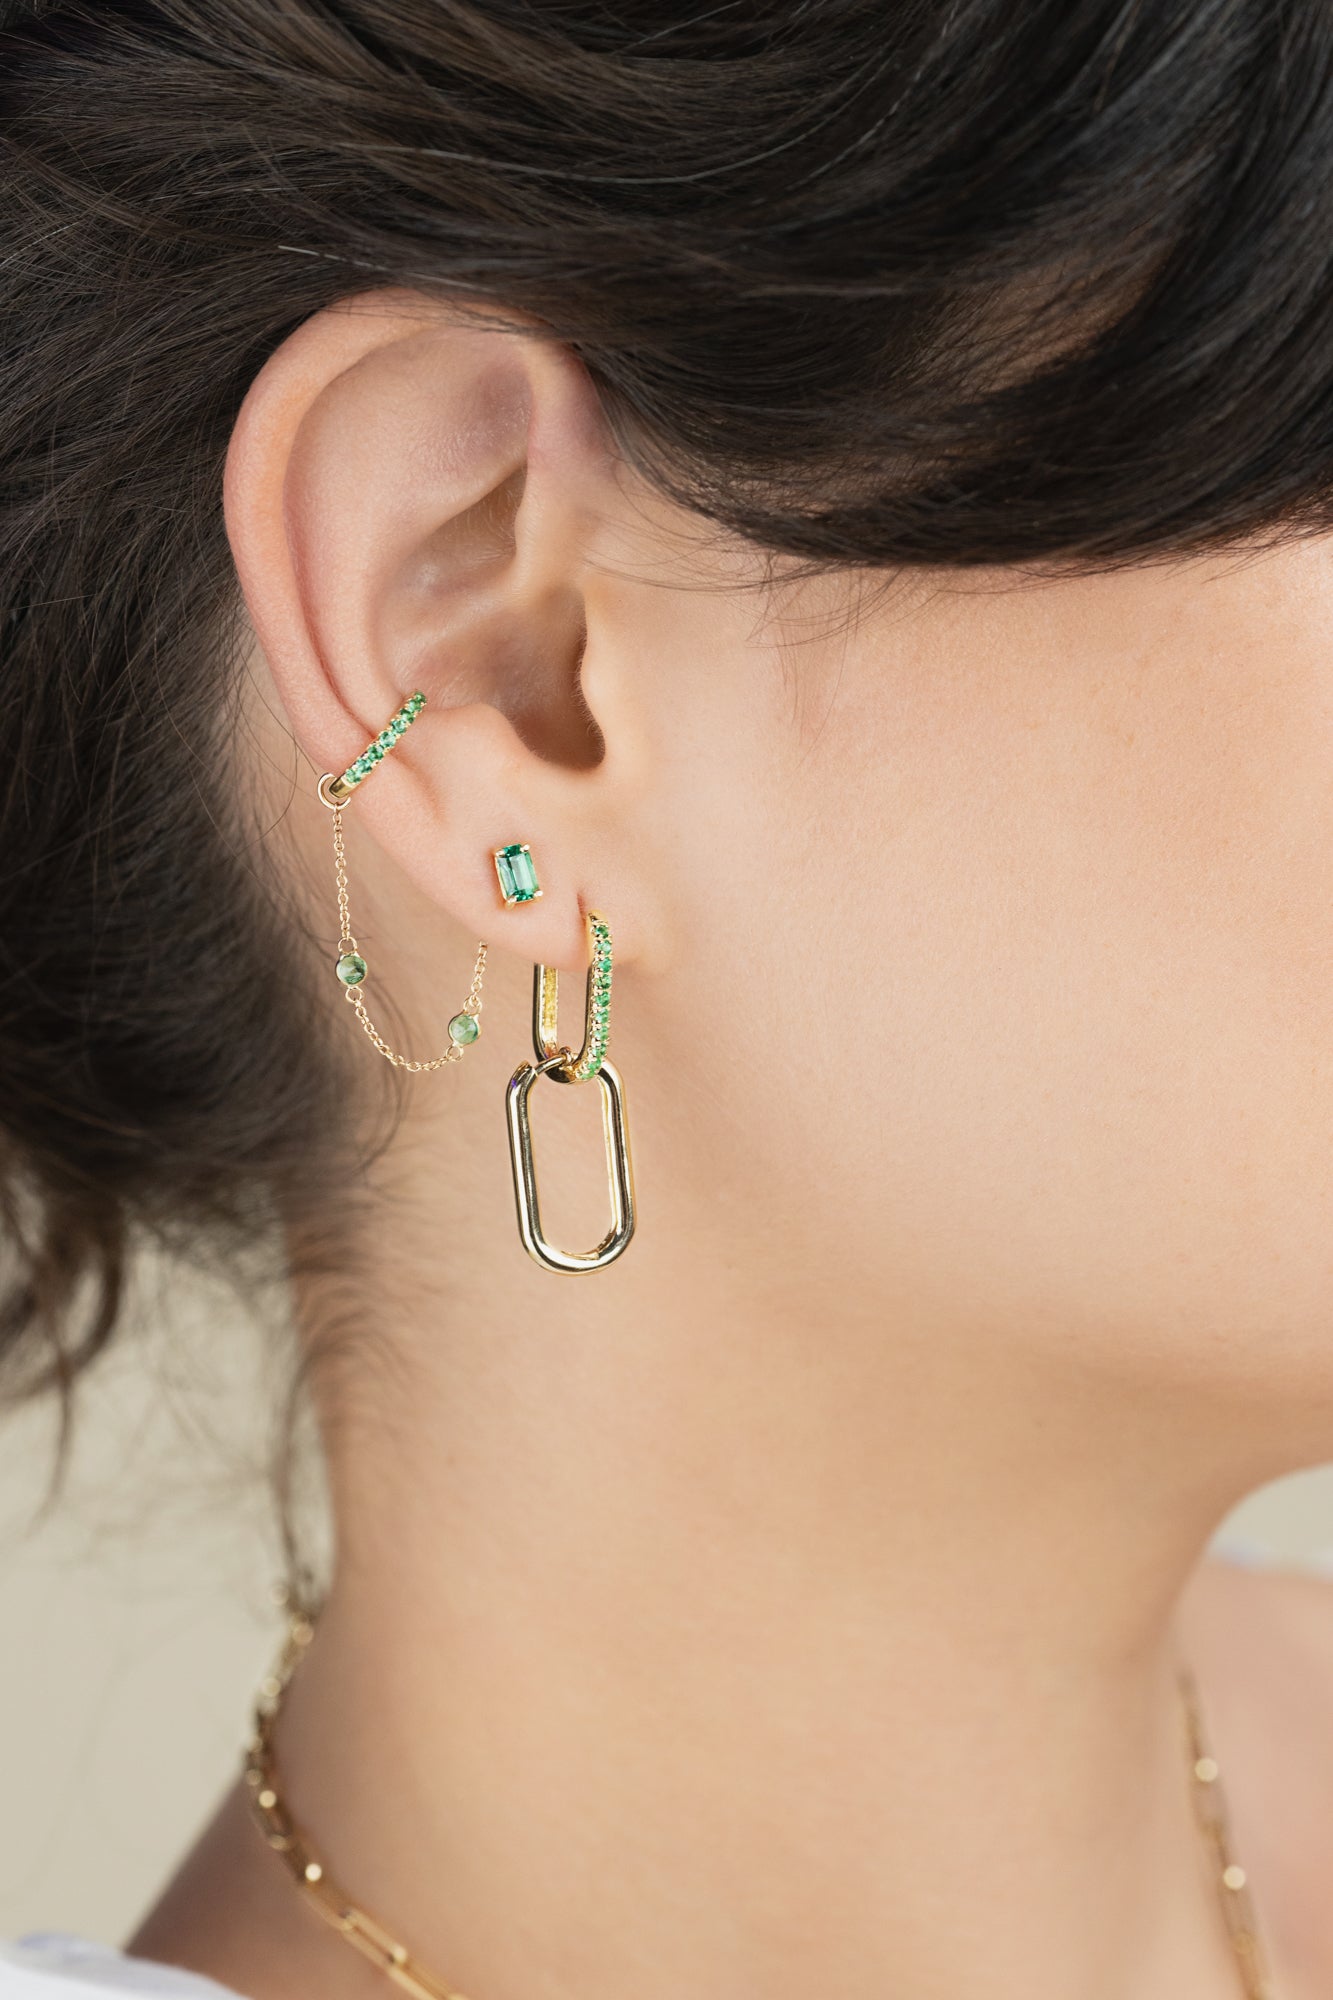 14K Emerald Cut Emerald Stud Earring/Eearrings